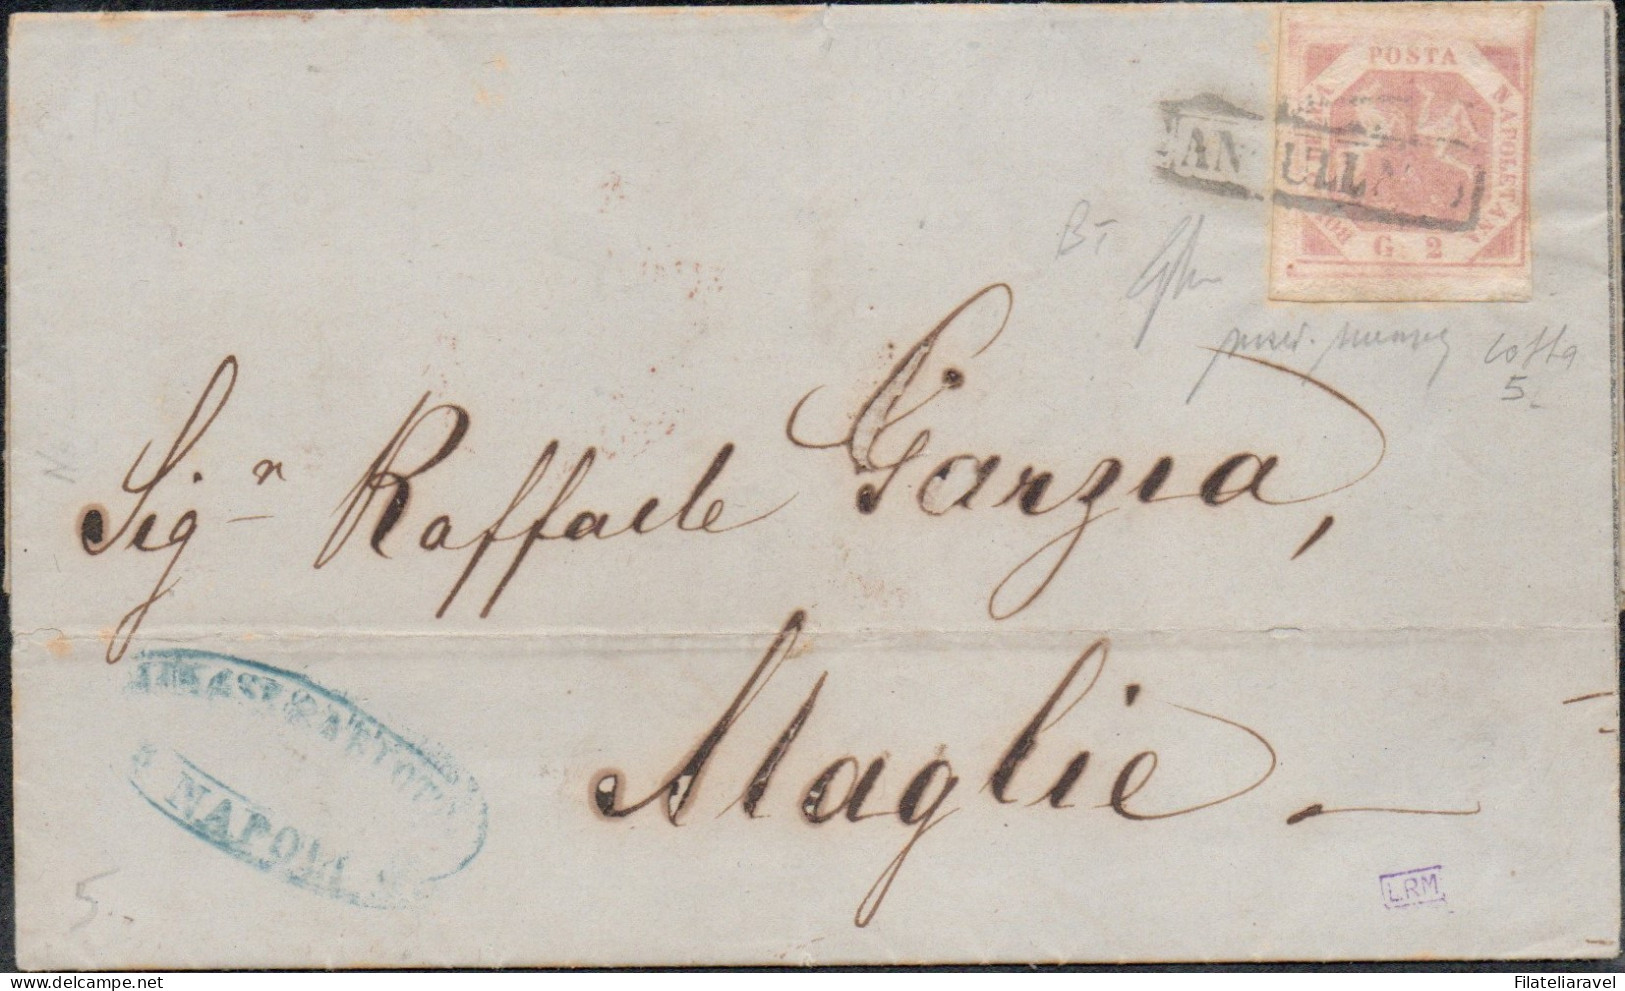 Ltr 1858 -  Napoli - Lettera Da Napoli A Maglie, 2 Grana (5a) Filigrana "BT" Completo E Capovolto RARA, Cert. Merone - Nápoles